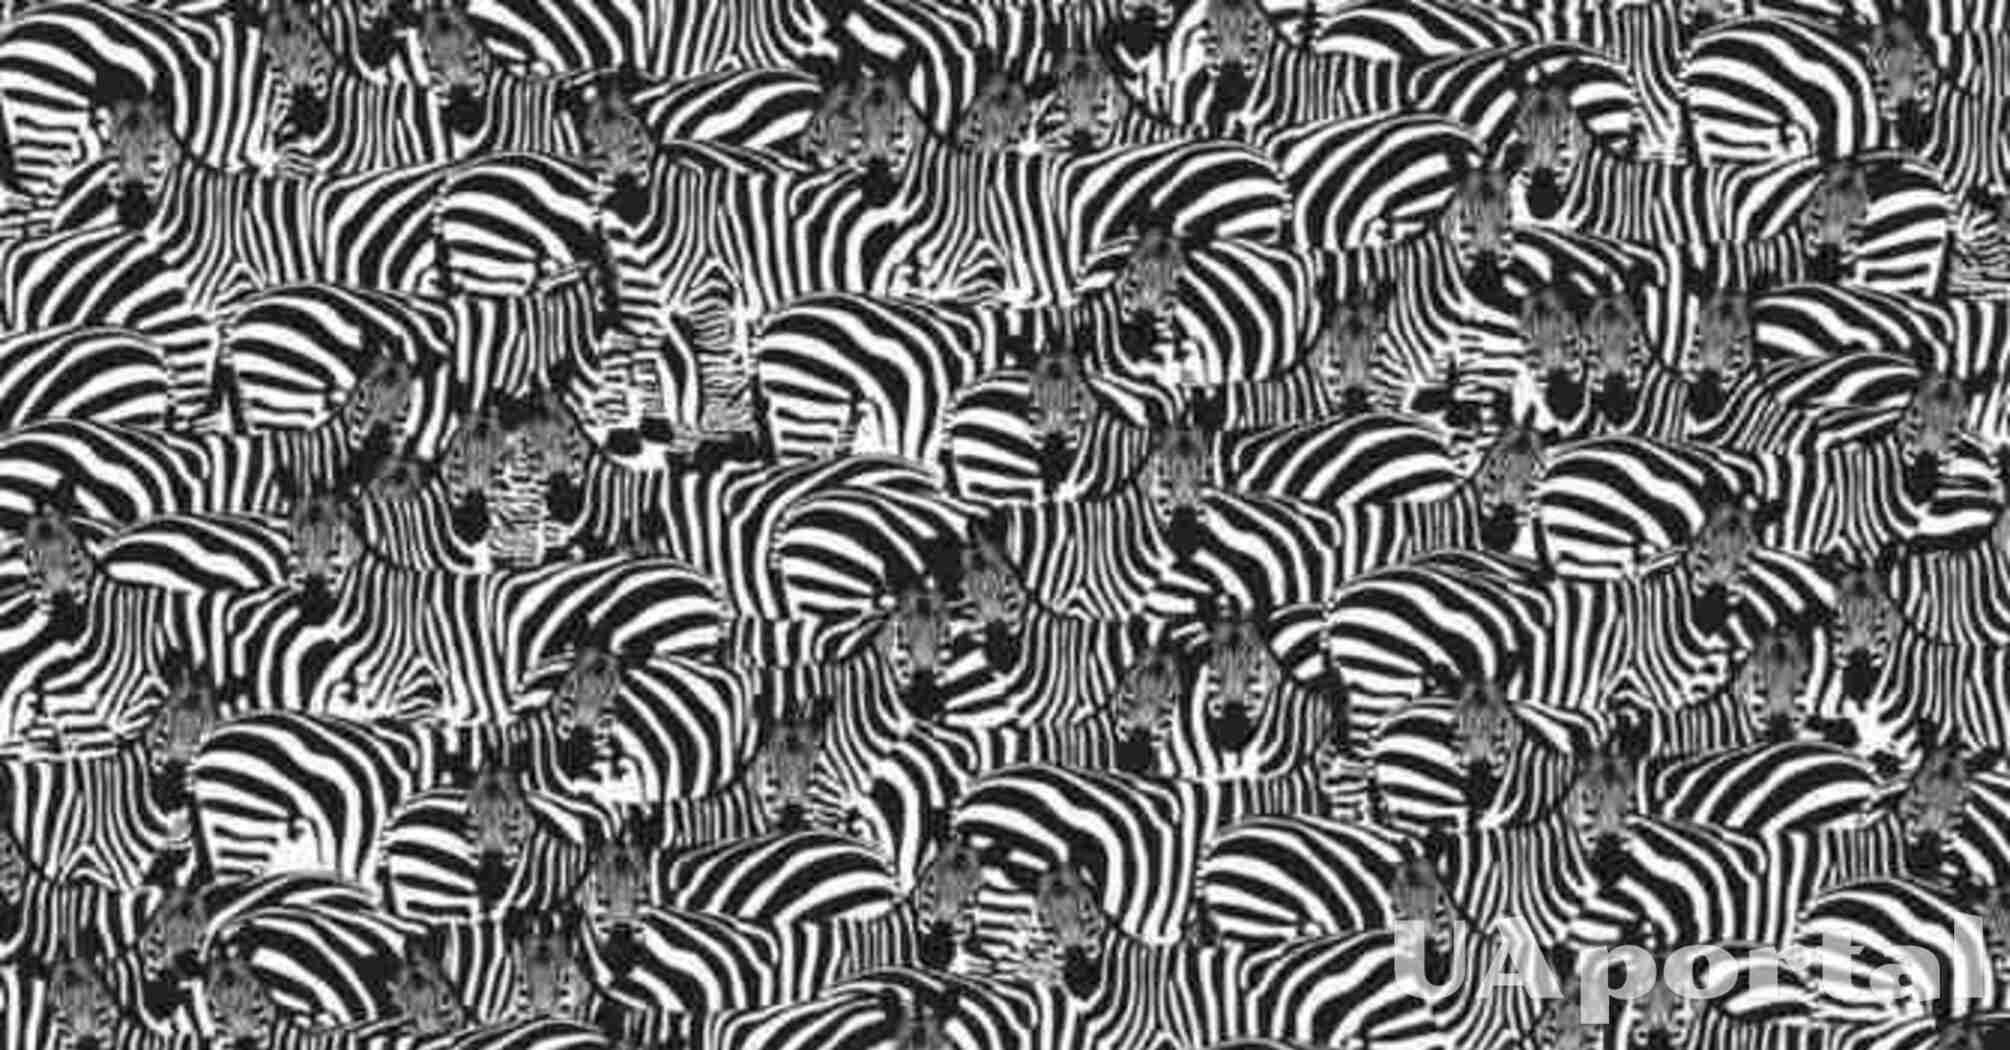 Лишь 1% людей способен найти на картинке пианино среди зебр: оптическая иллюзия для внимательных